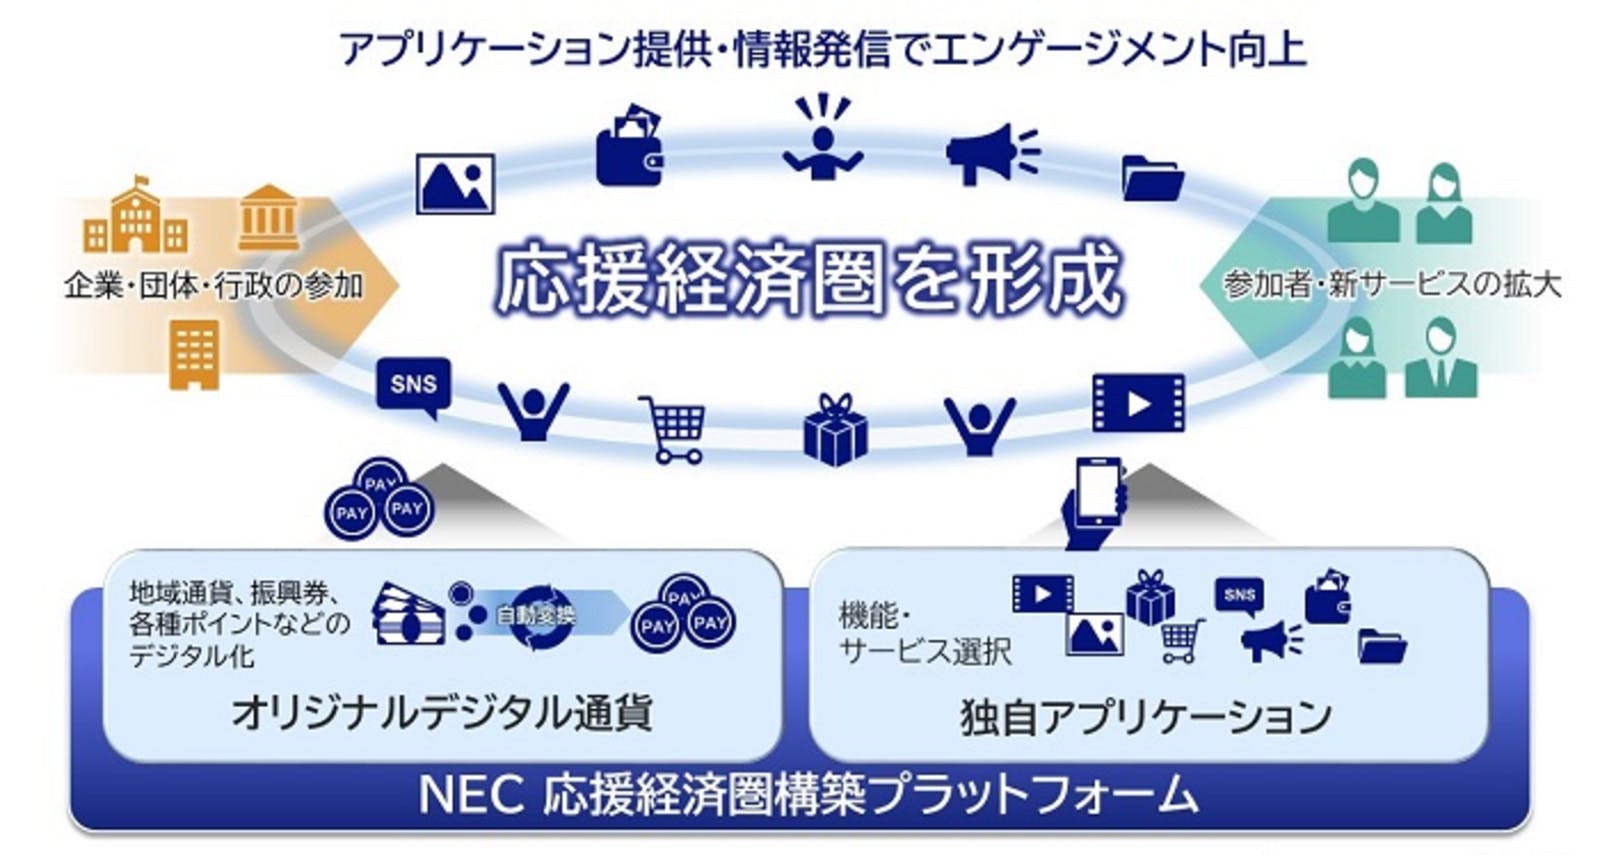 NEC 応援経済圏構築プラットフォーム